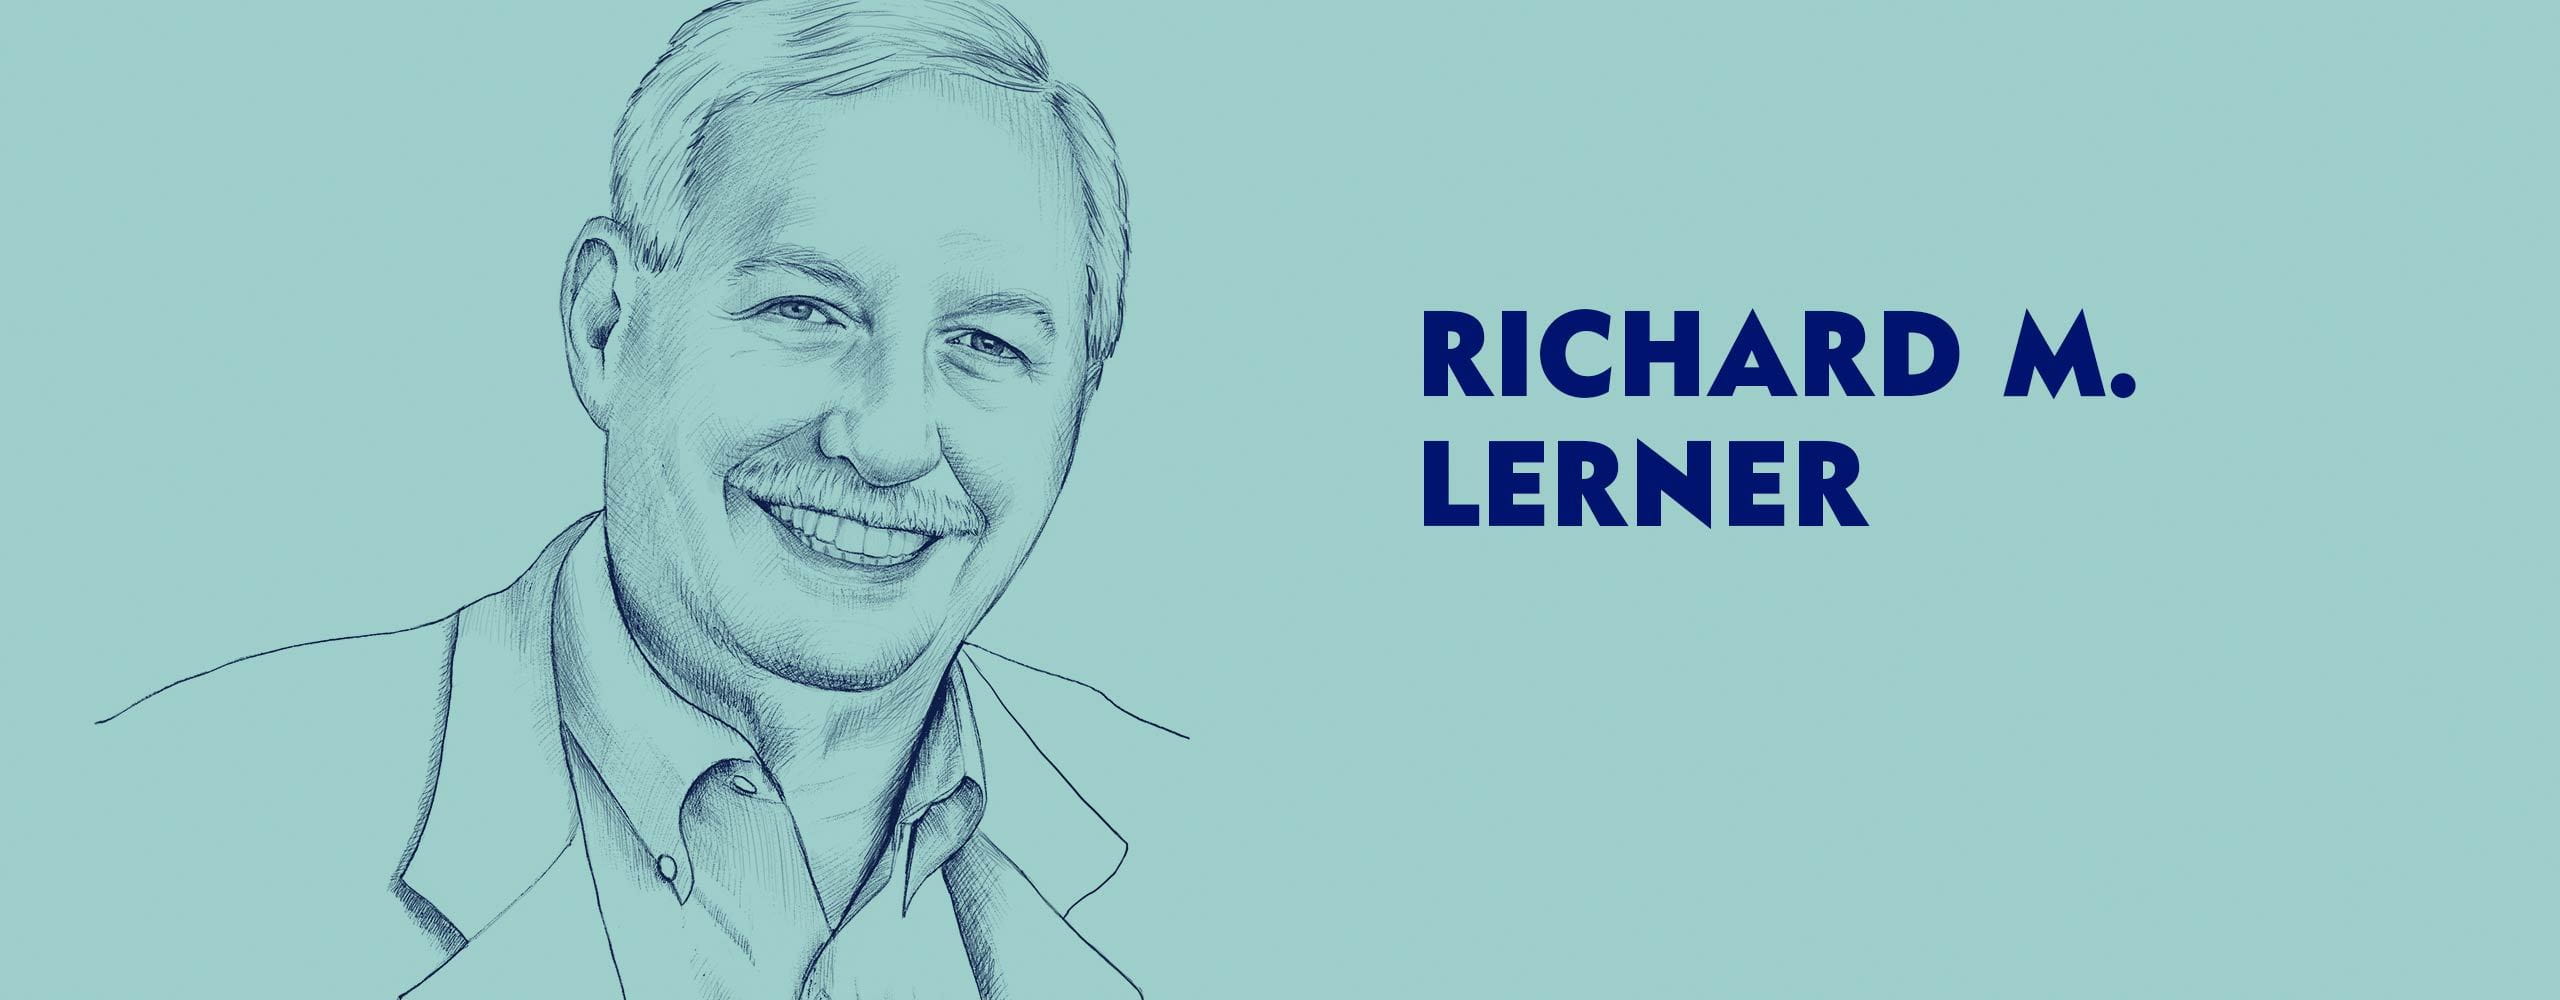 Wywiad z Richardem M. Lernerem